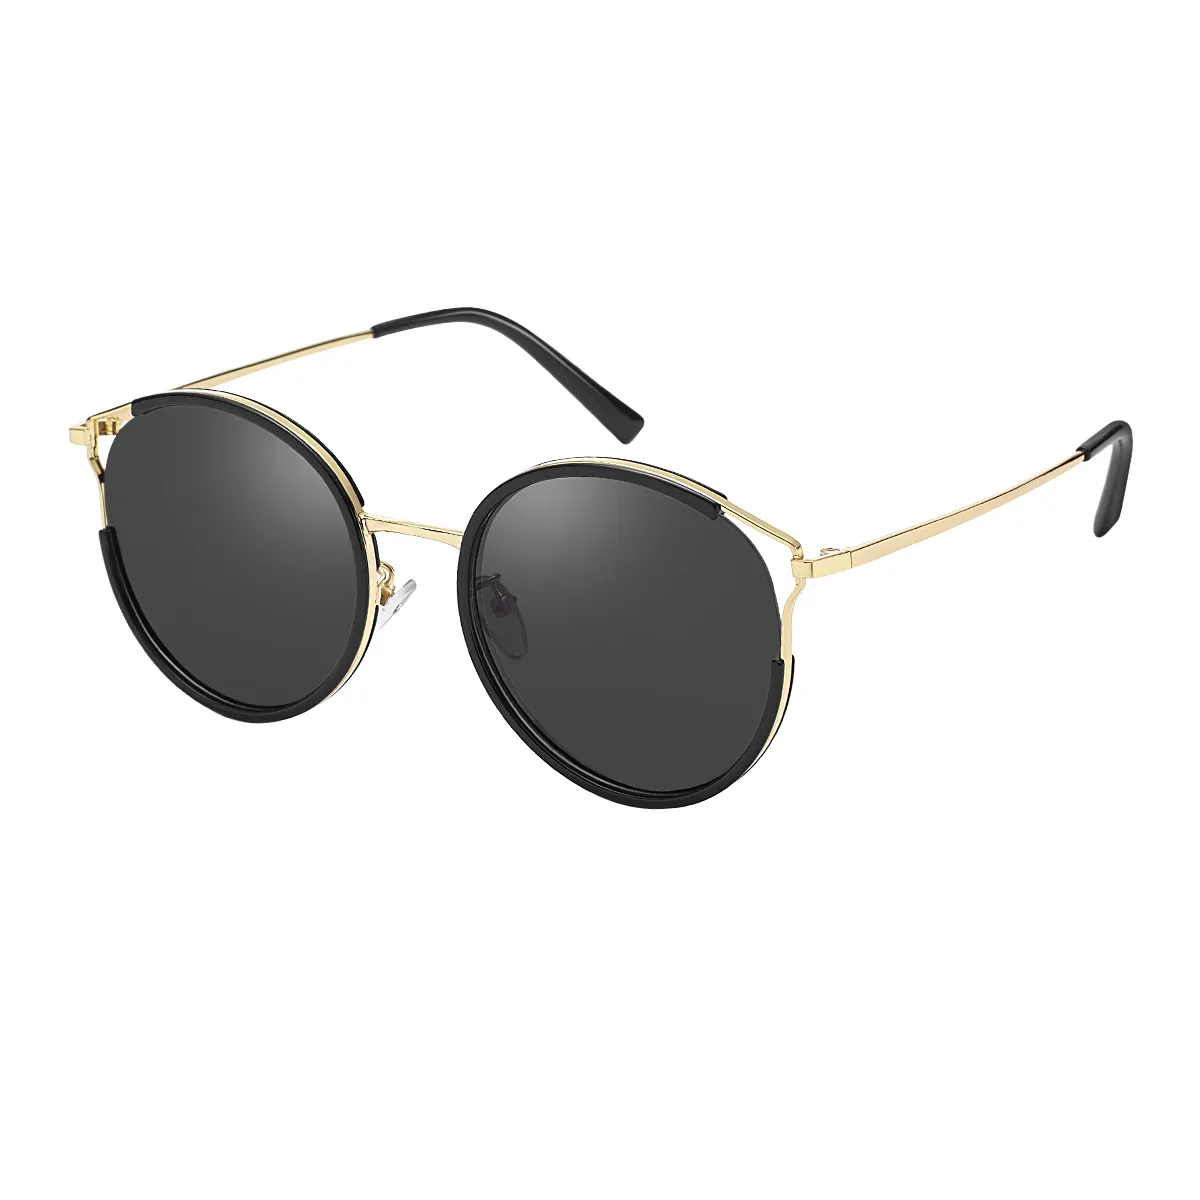 Evangeline - Round Gold Sunglasses for Men & Women